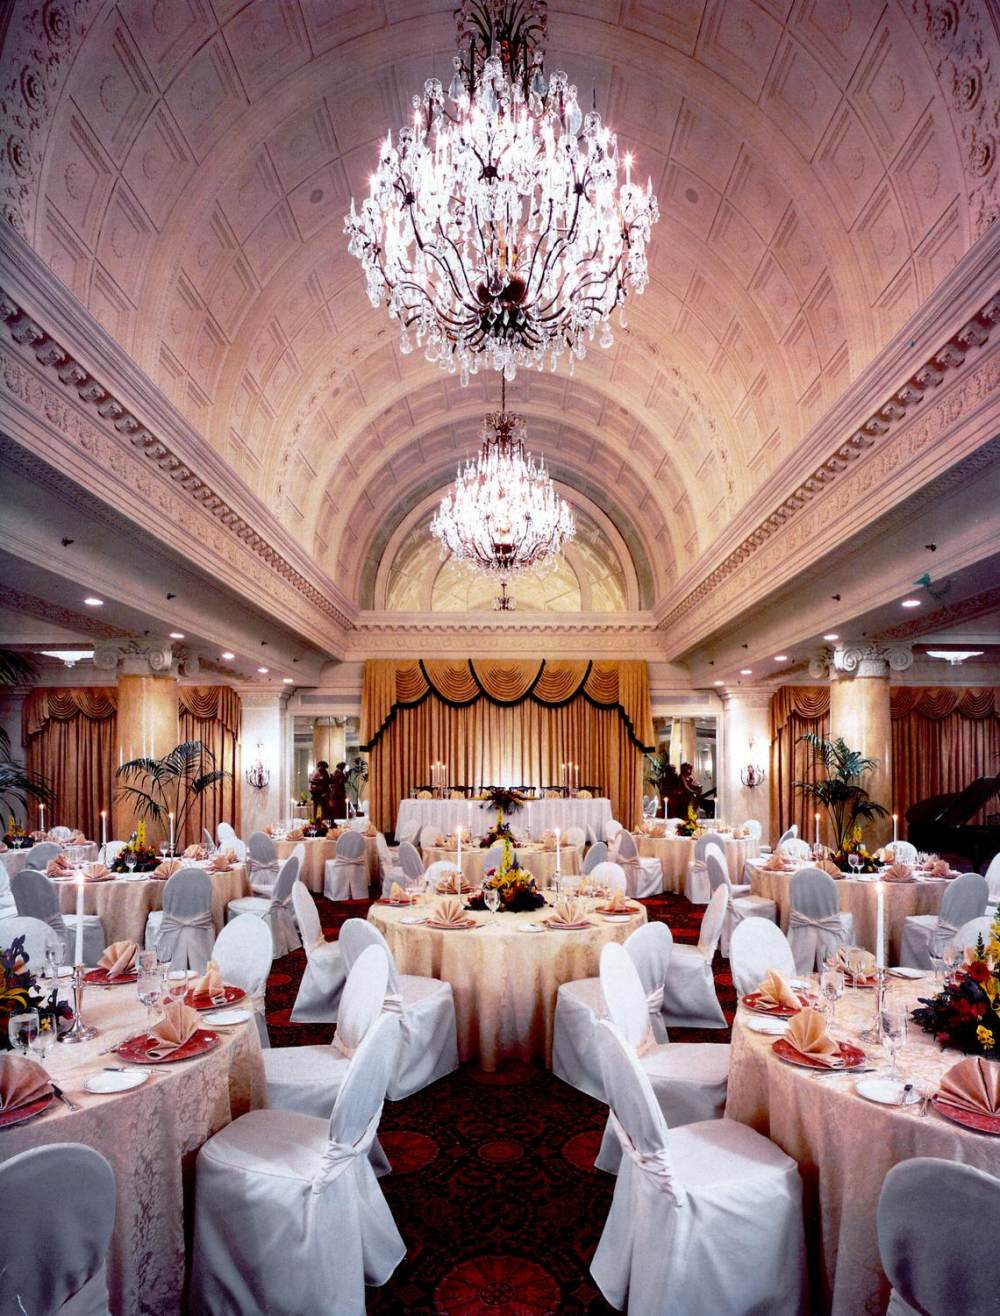 皇家艾美爱德华国王酒店 多伦多Le Meridien King Edward_22)Le Meridien King Edward—Vanity Ballroom Banquet - 8.8mb - 3.8in x 4.7in @ 30.jpg